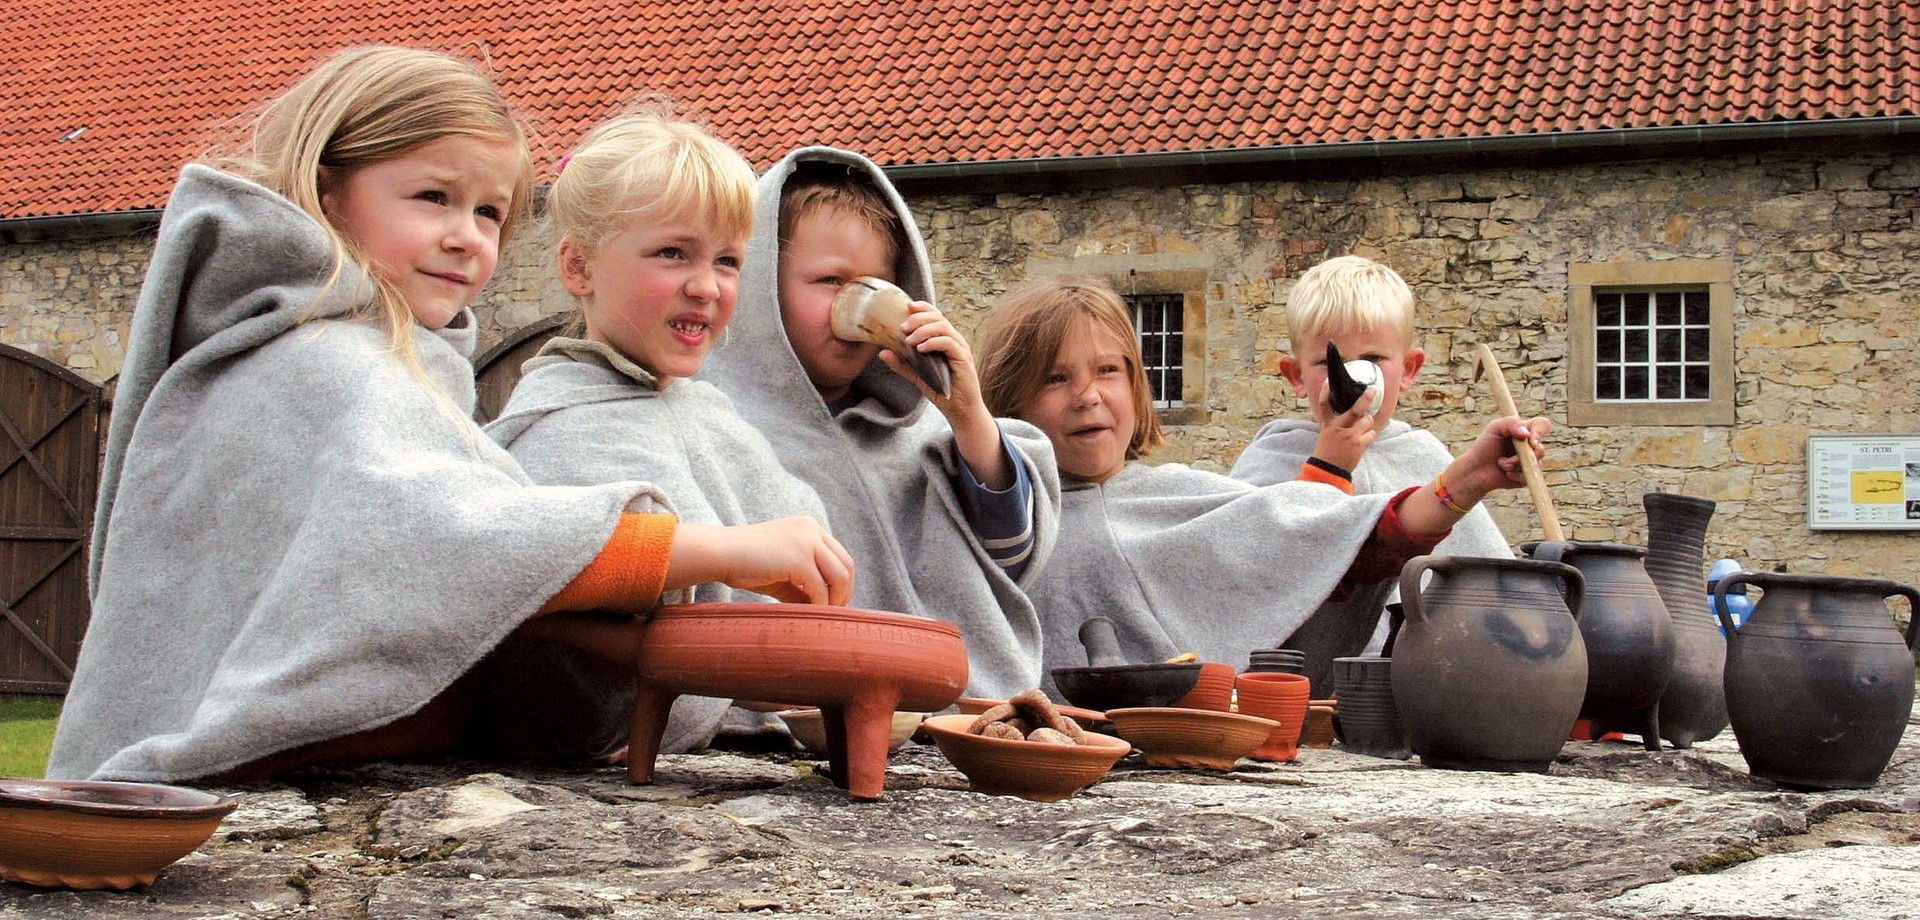 Kinder verkleidet in Mönchskutte in der Stiftung Kloster Dalheim